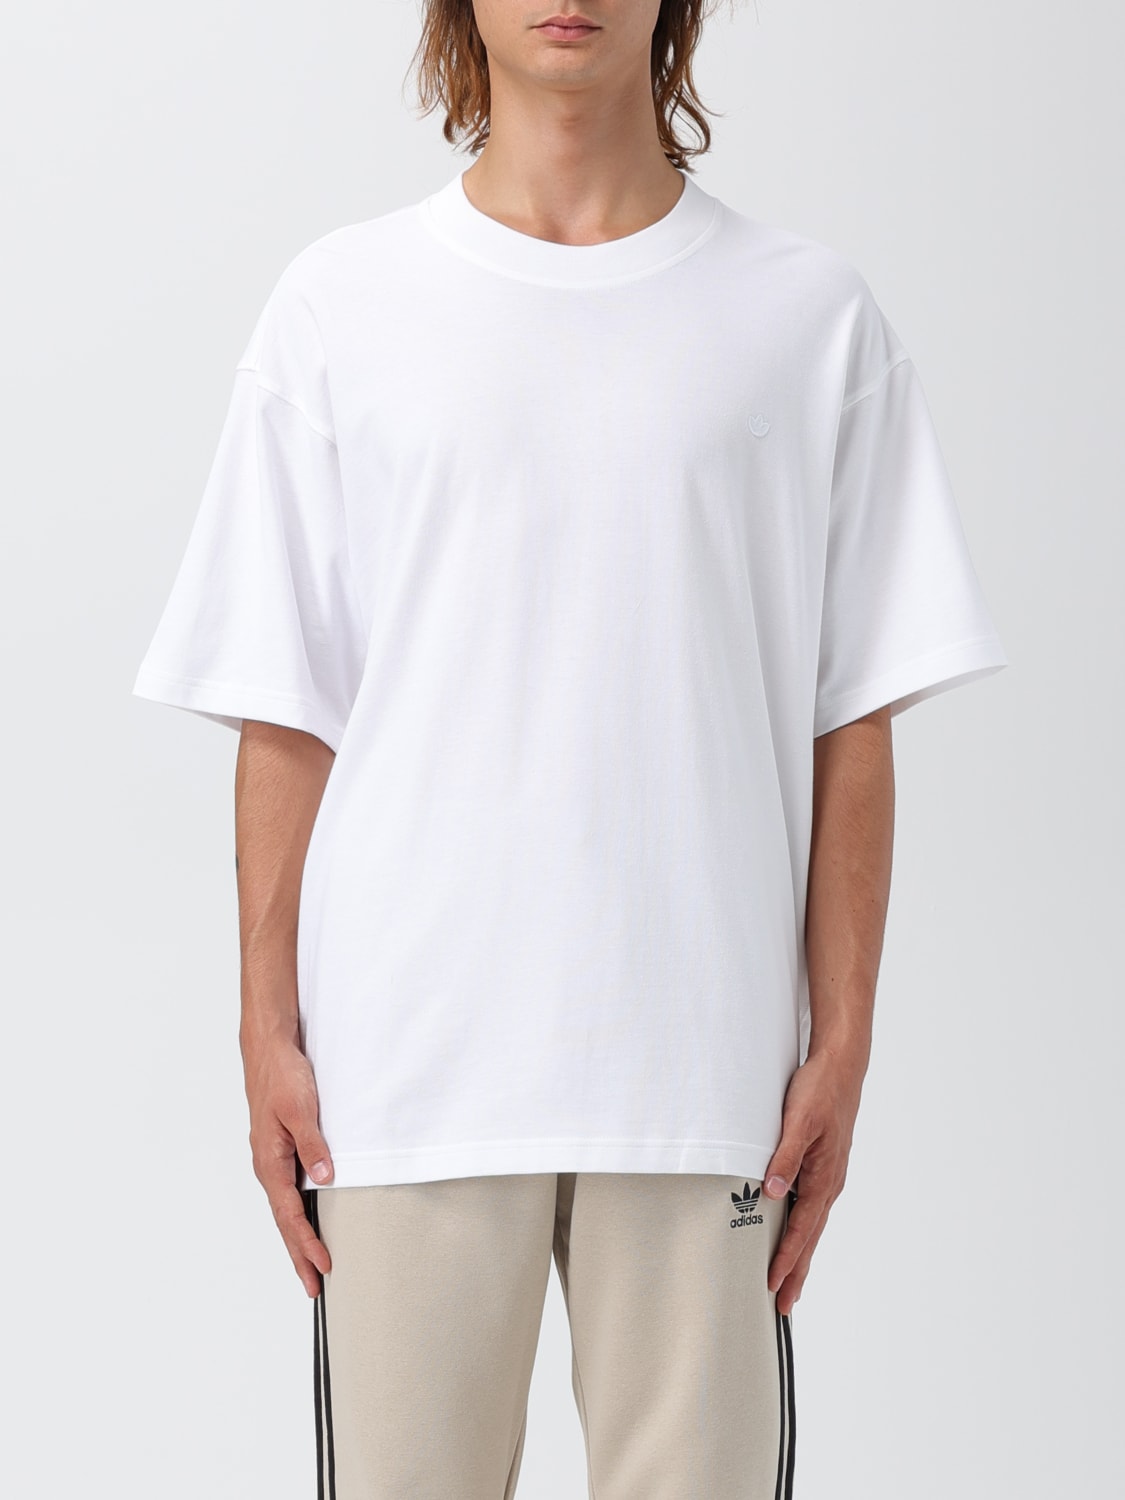 ADIDAS ORIGINALS: cotton t-shirt with logo - White | Adidas Originals t- shirt IM4388 online at | Hosen-Sets